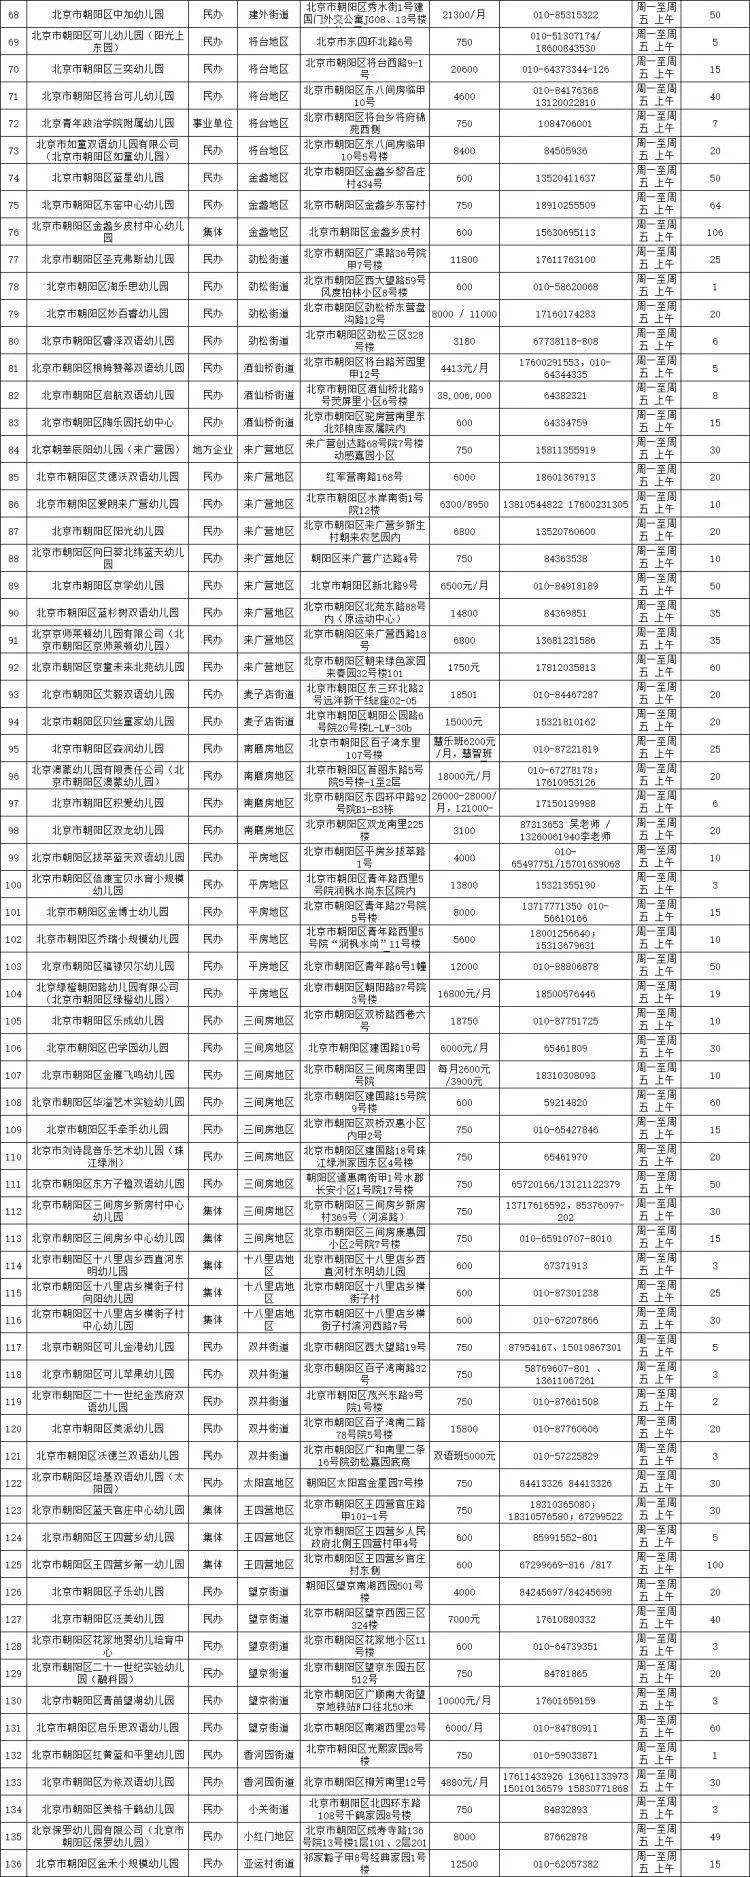 数据来源：北京朝阳区入园登记报名服务平台<br>